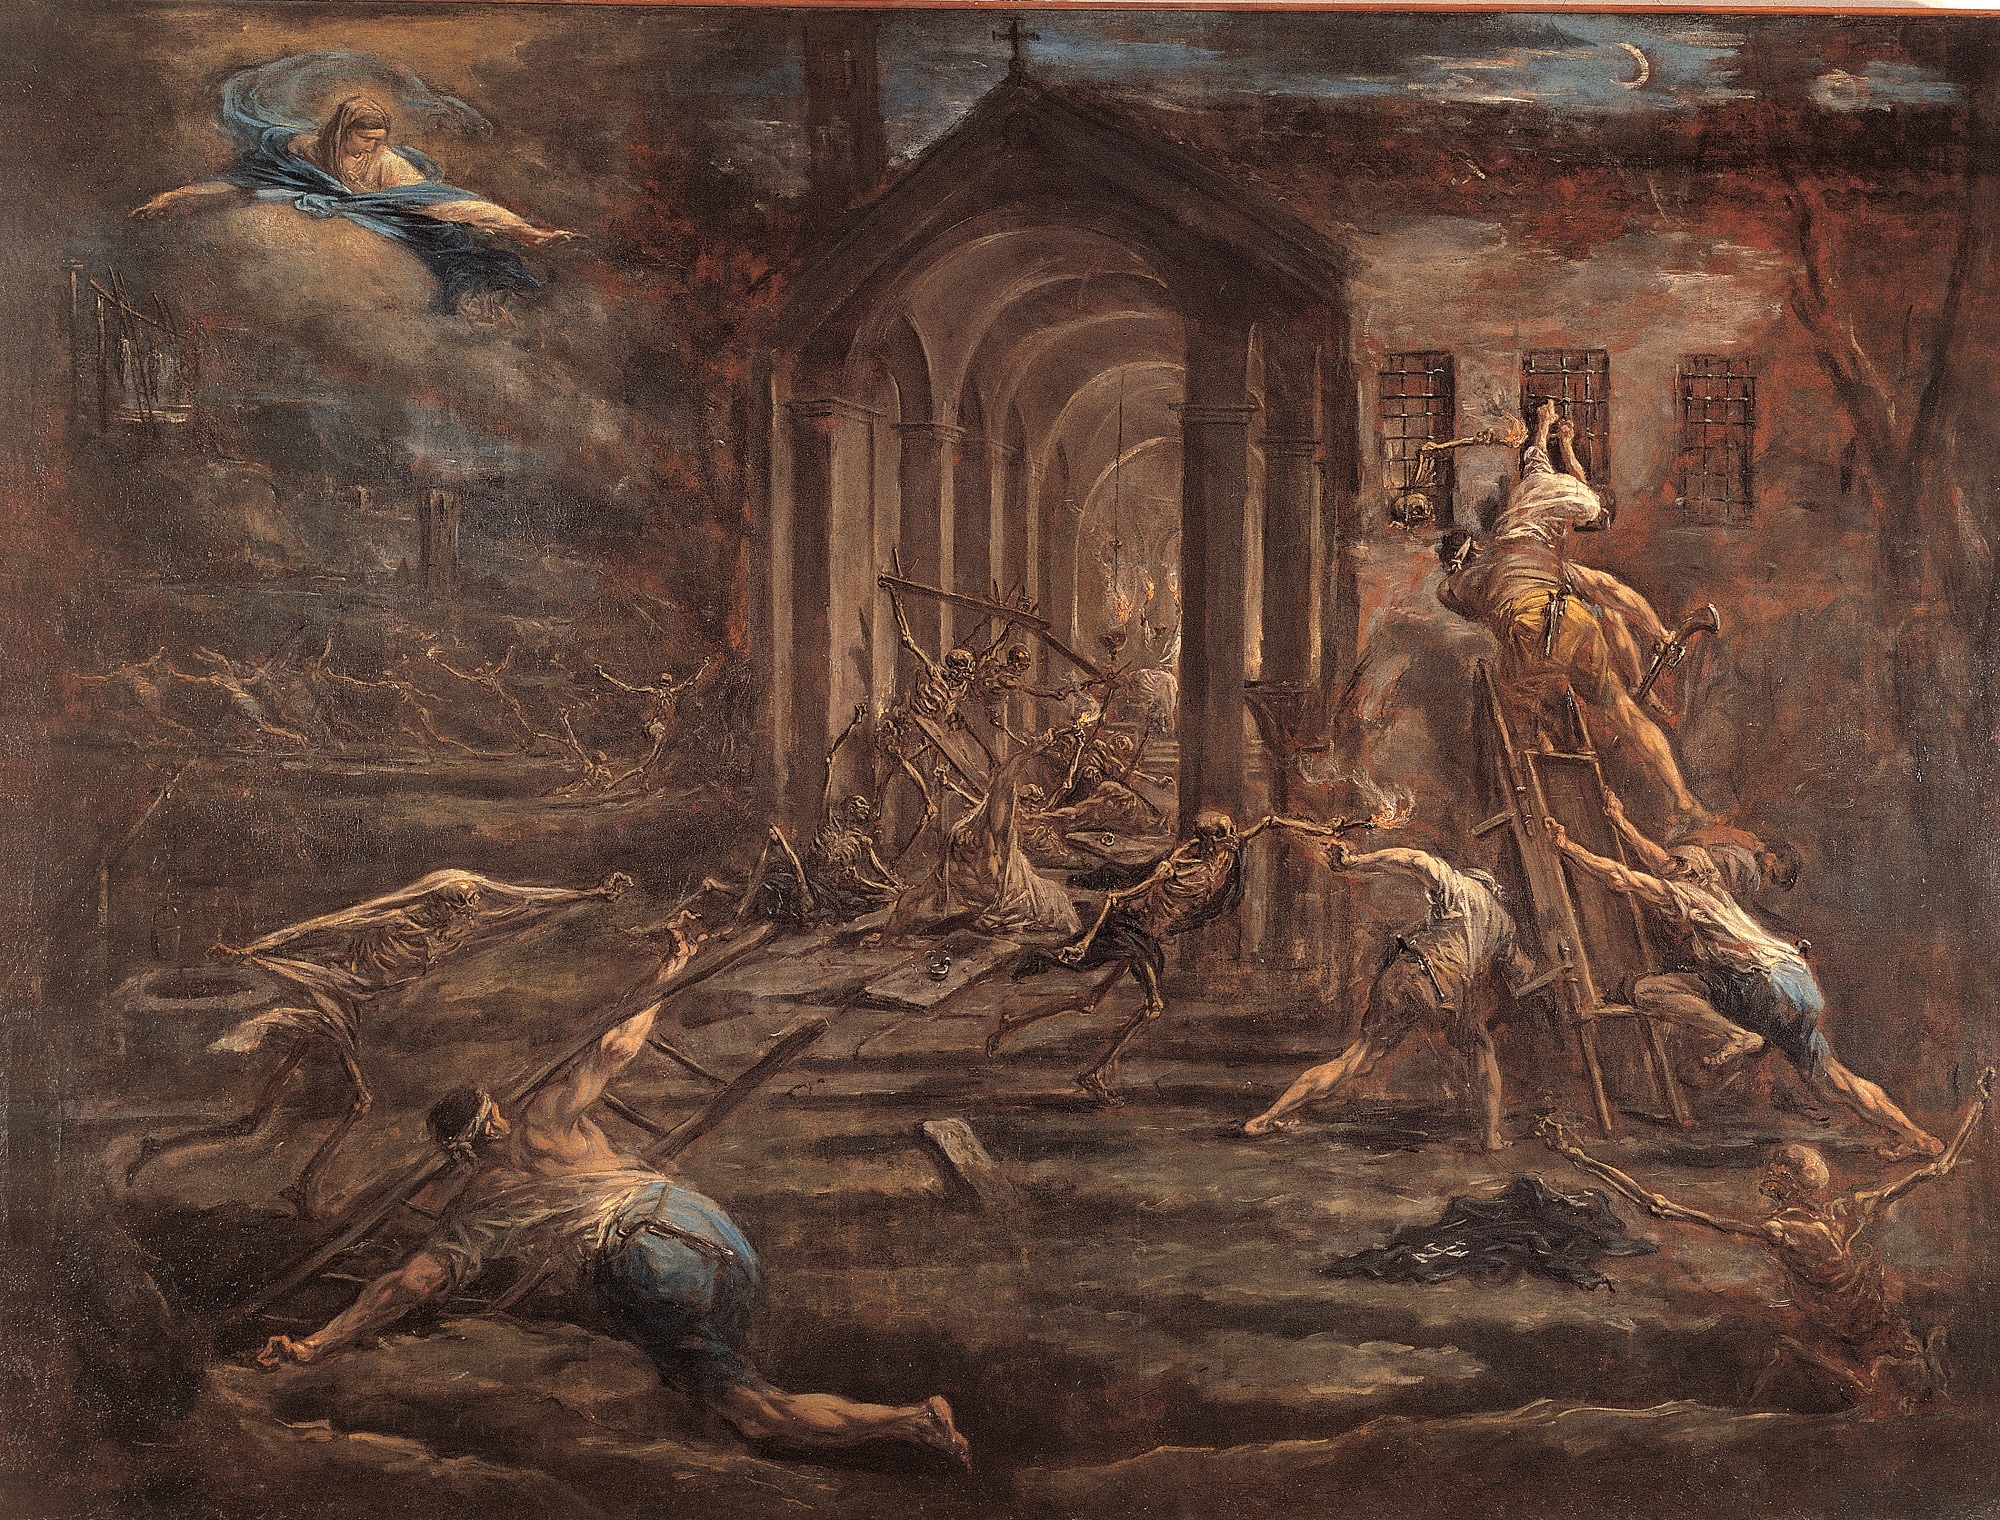 Alessandro Magnasco, Il furto sacrilego, olio su tela, 1731-’35, 176×236,5cm., Museo Diocesano, Quadreria Arcivescovile, Milano